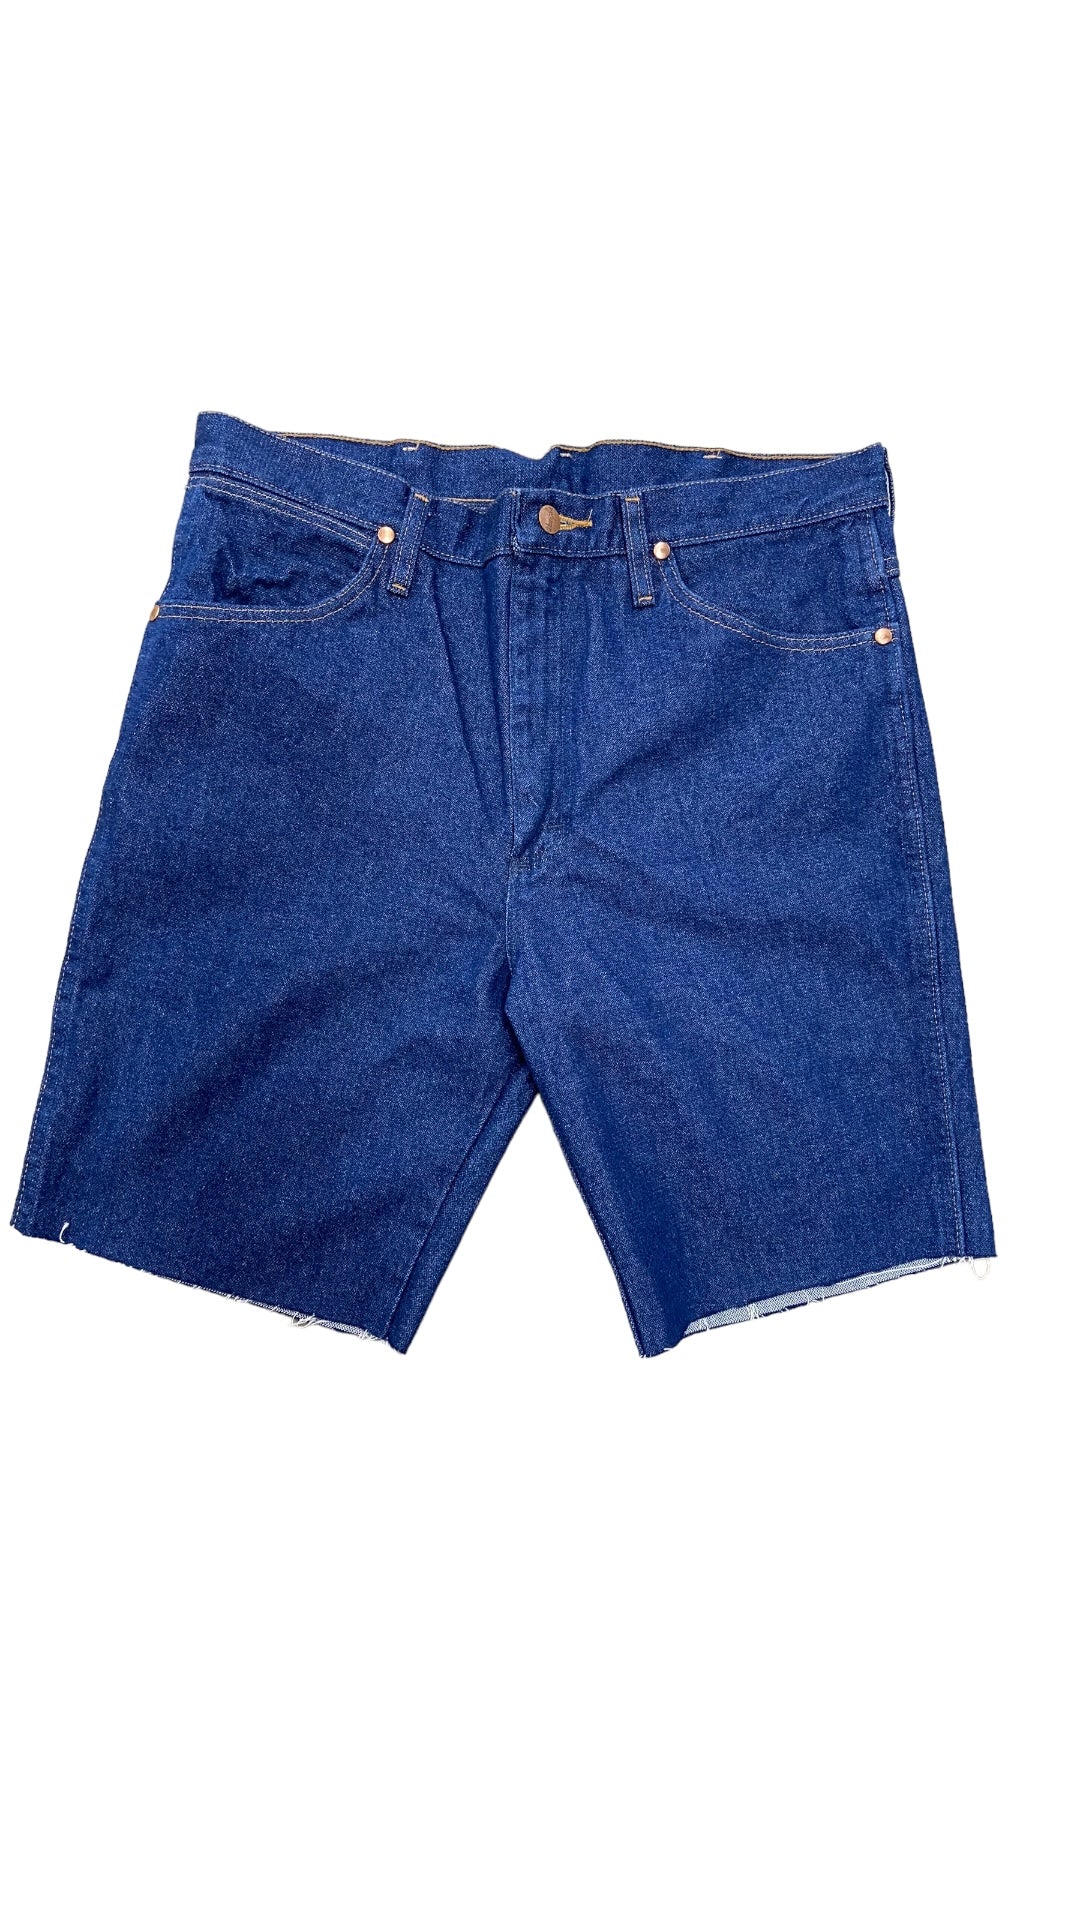 VTG Wrangler Cowboy Cut Blue Jean Shorts Sz 33x34